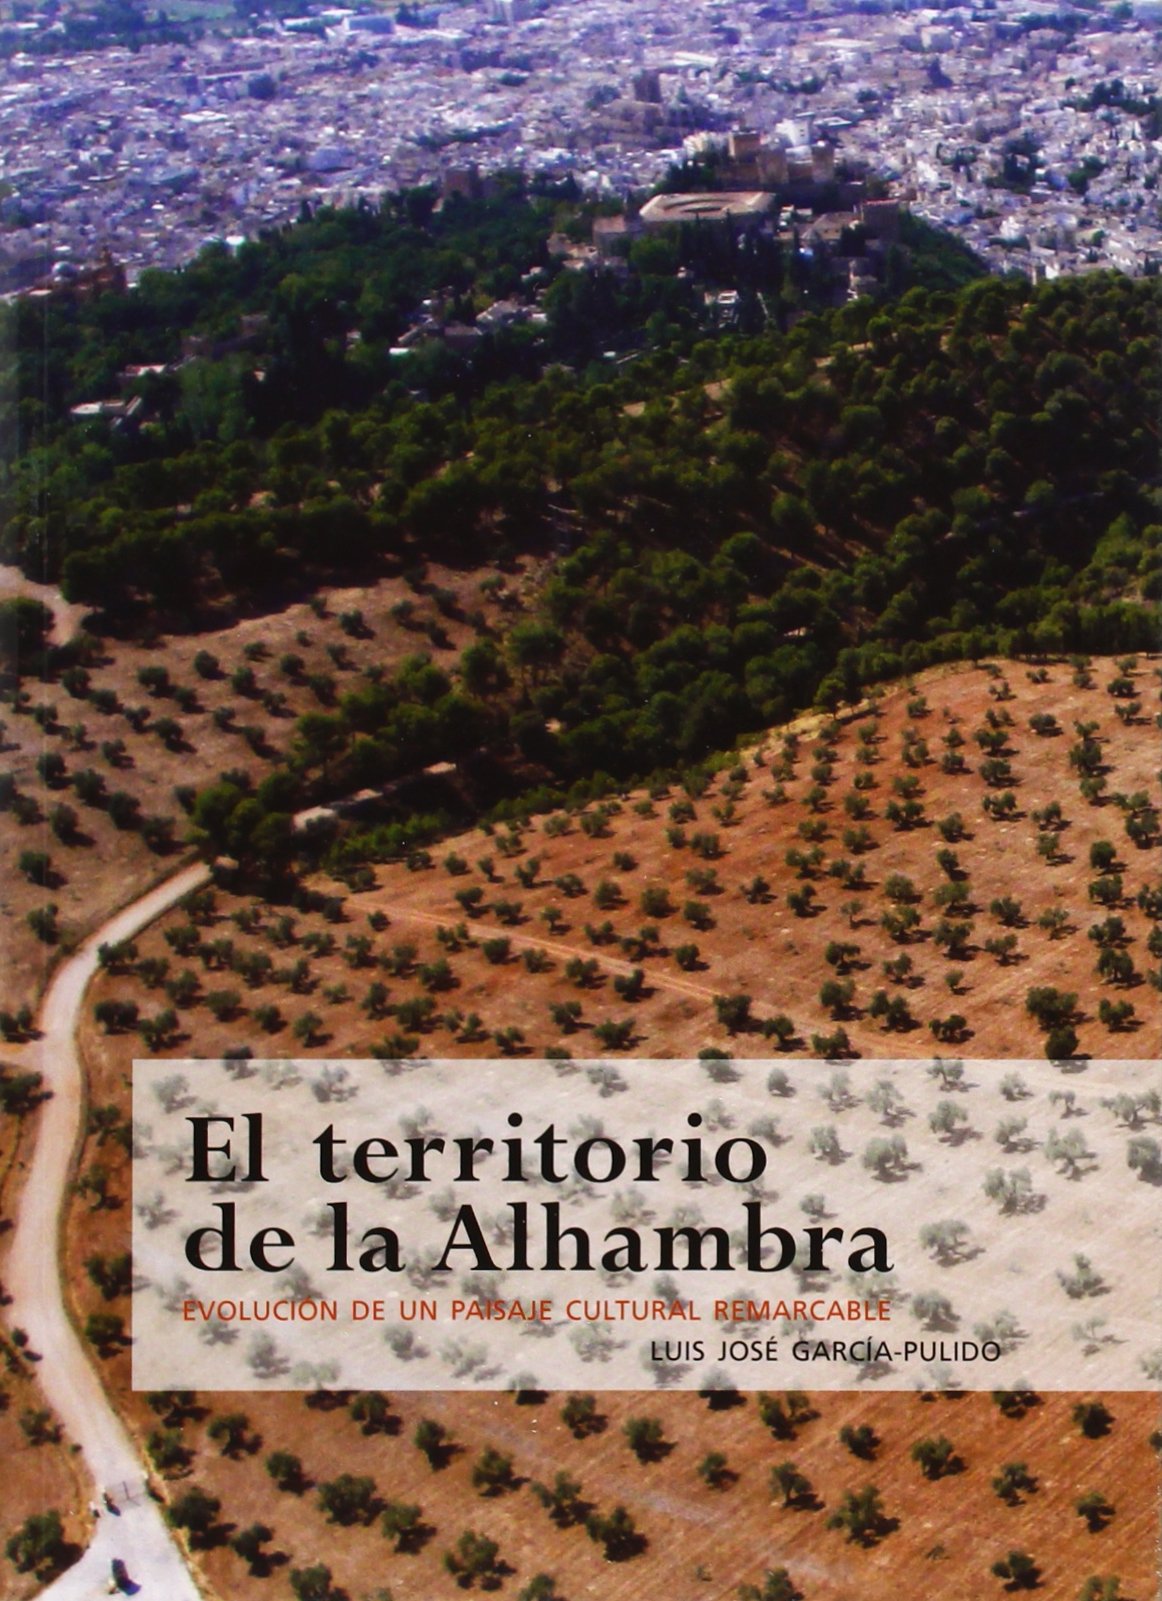 El territorio de la Alhambra